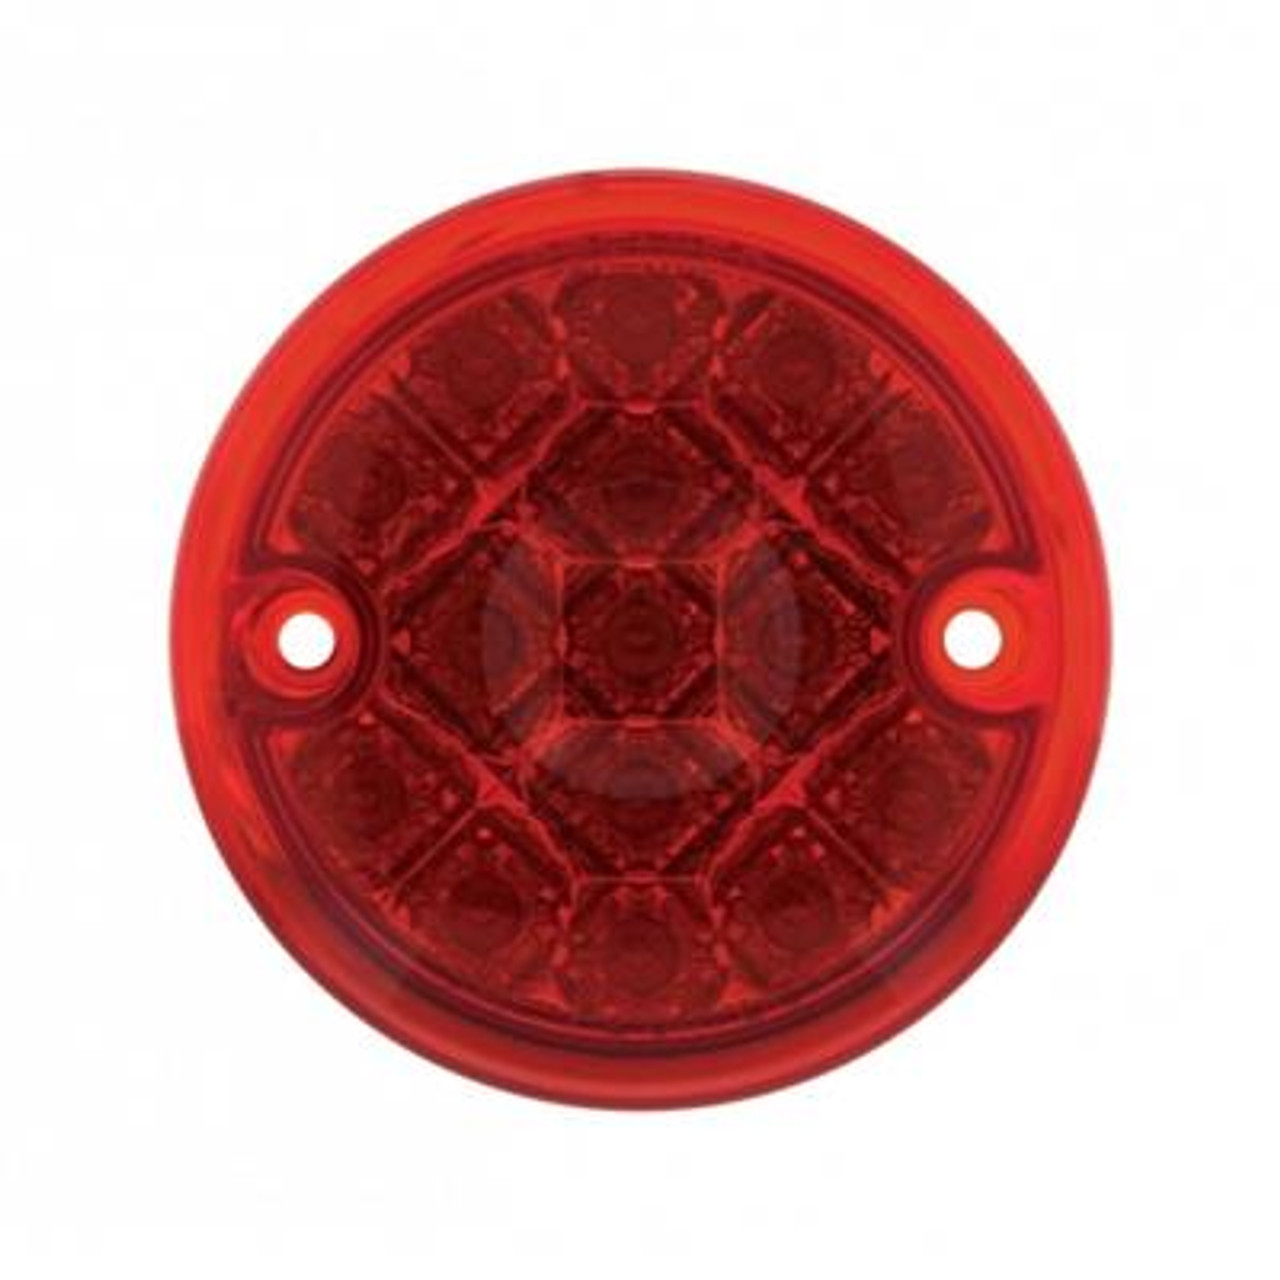 15 LED 3" Reflector Series 4 Light For Double Face Light Housing - Red LED/Red Lens (Bulk)